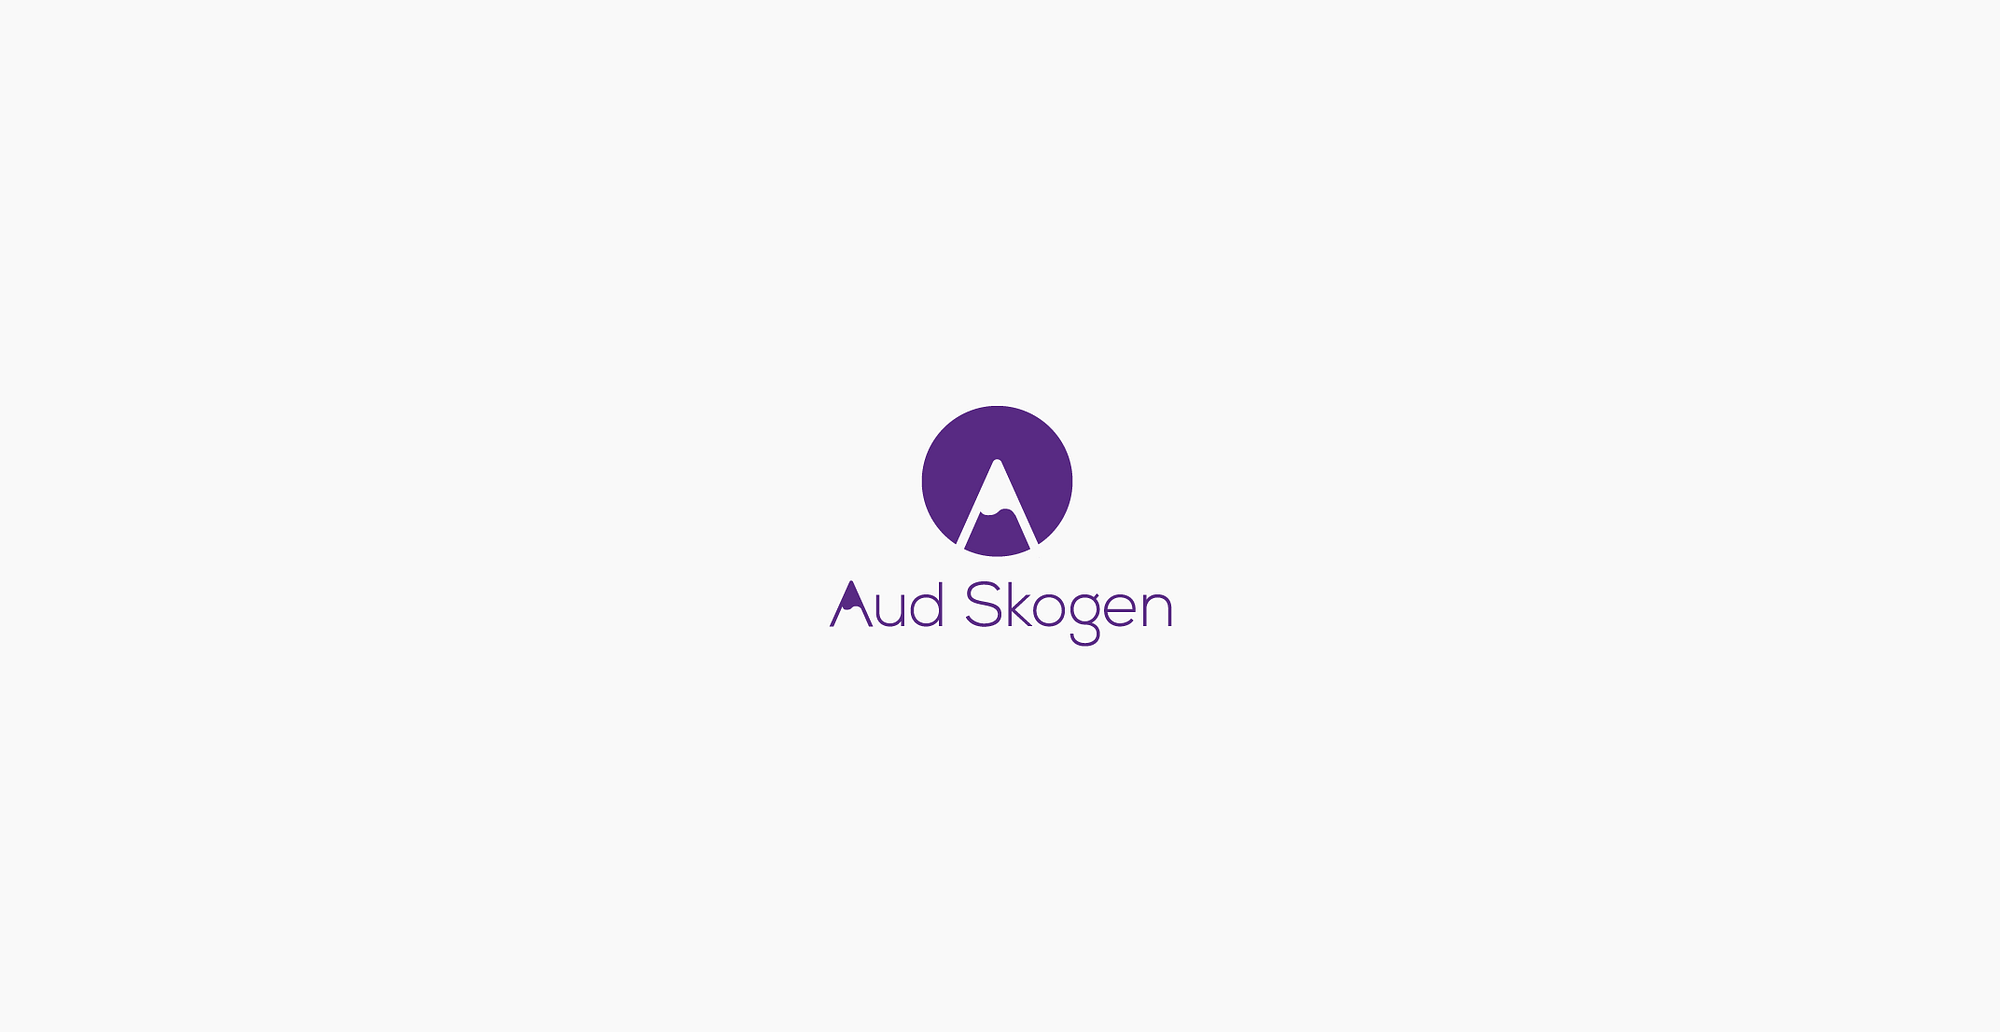 Logo designe for Aud Skogen